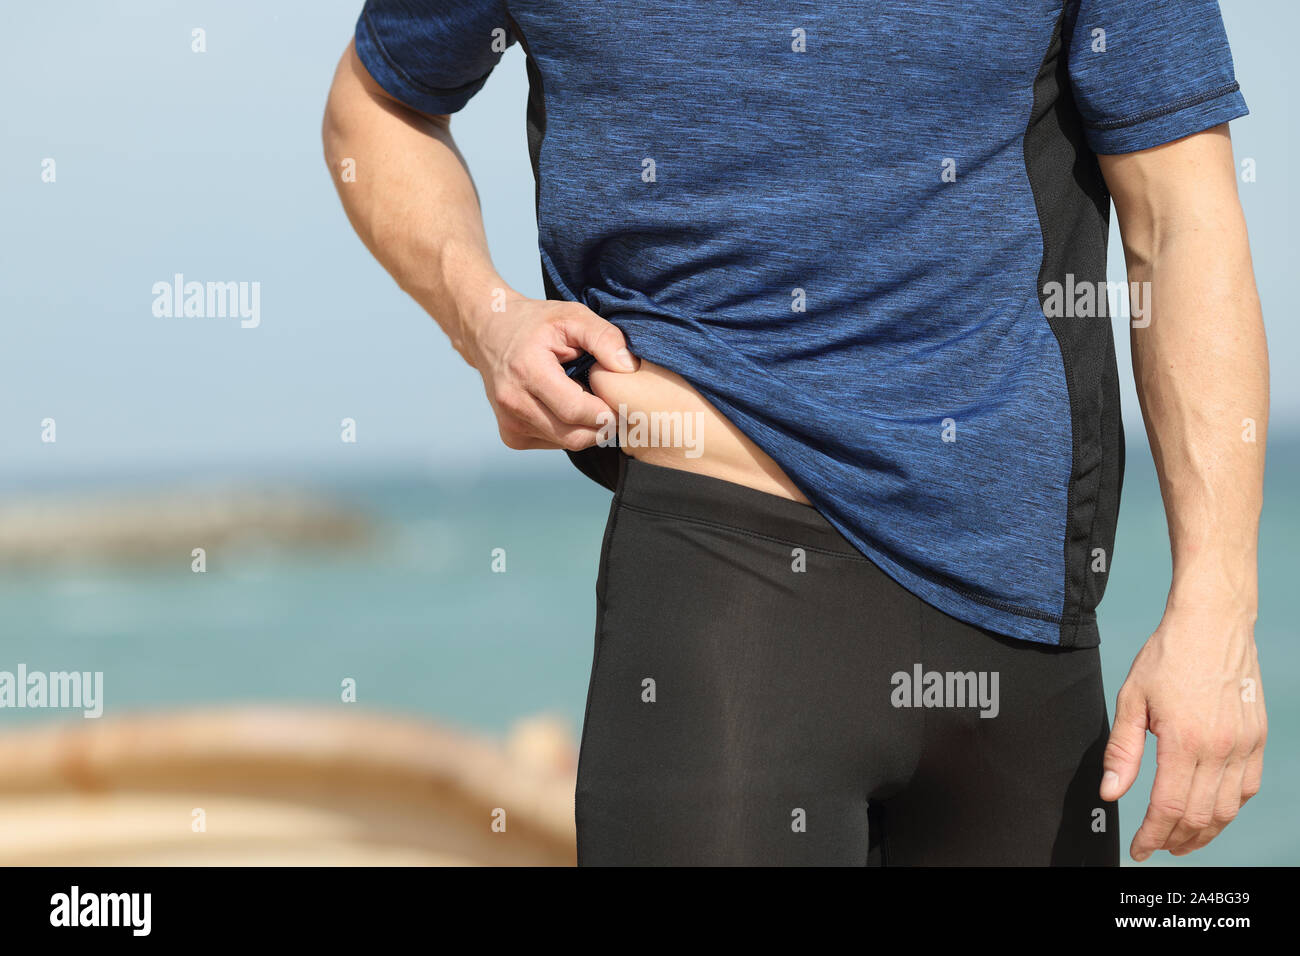 In prossimità di uno sportivo a mano pizzicare il grasso corporeo all'aperto sulla spiaggia Foto Stock